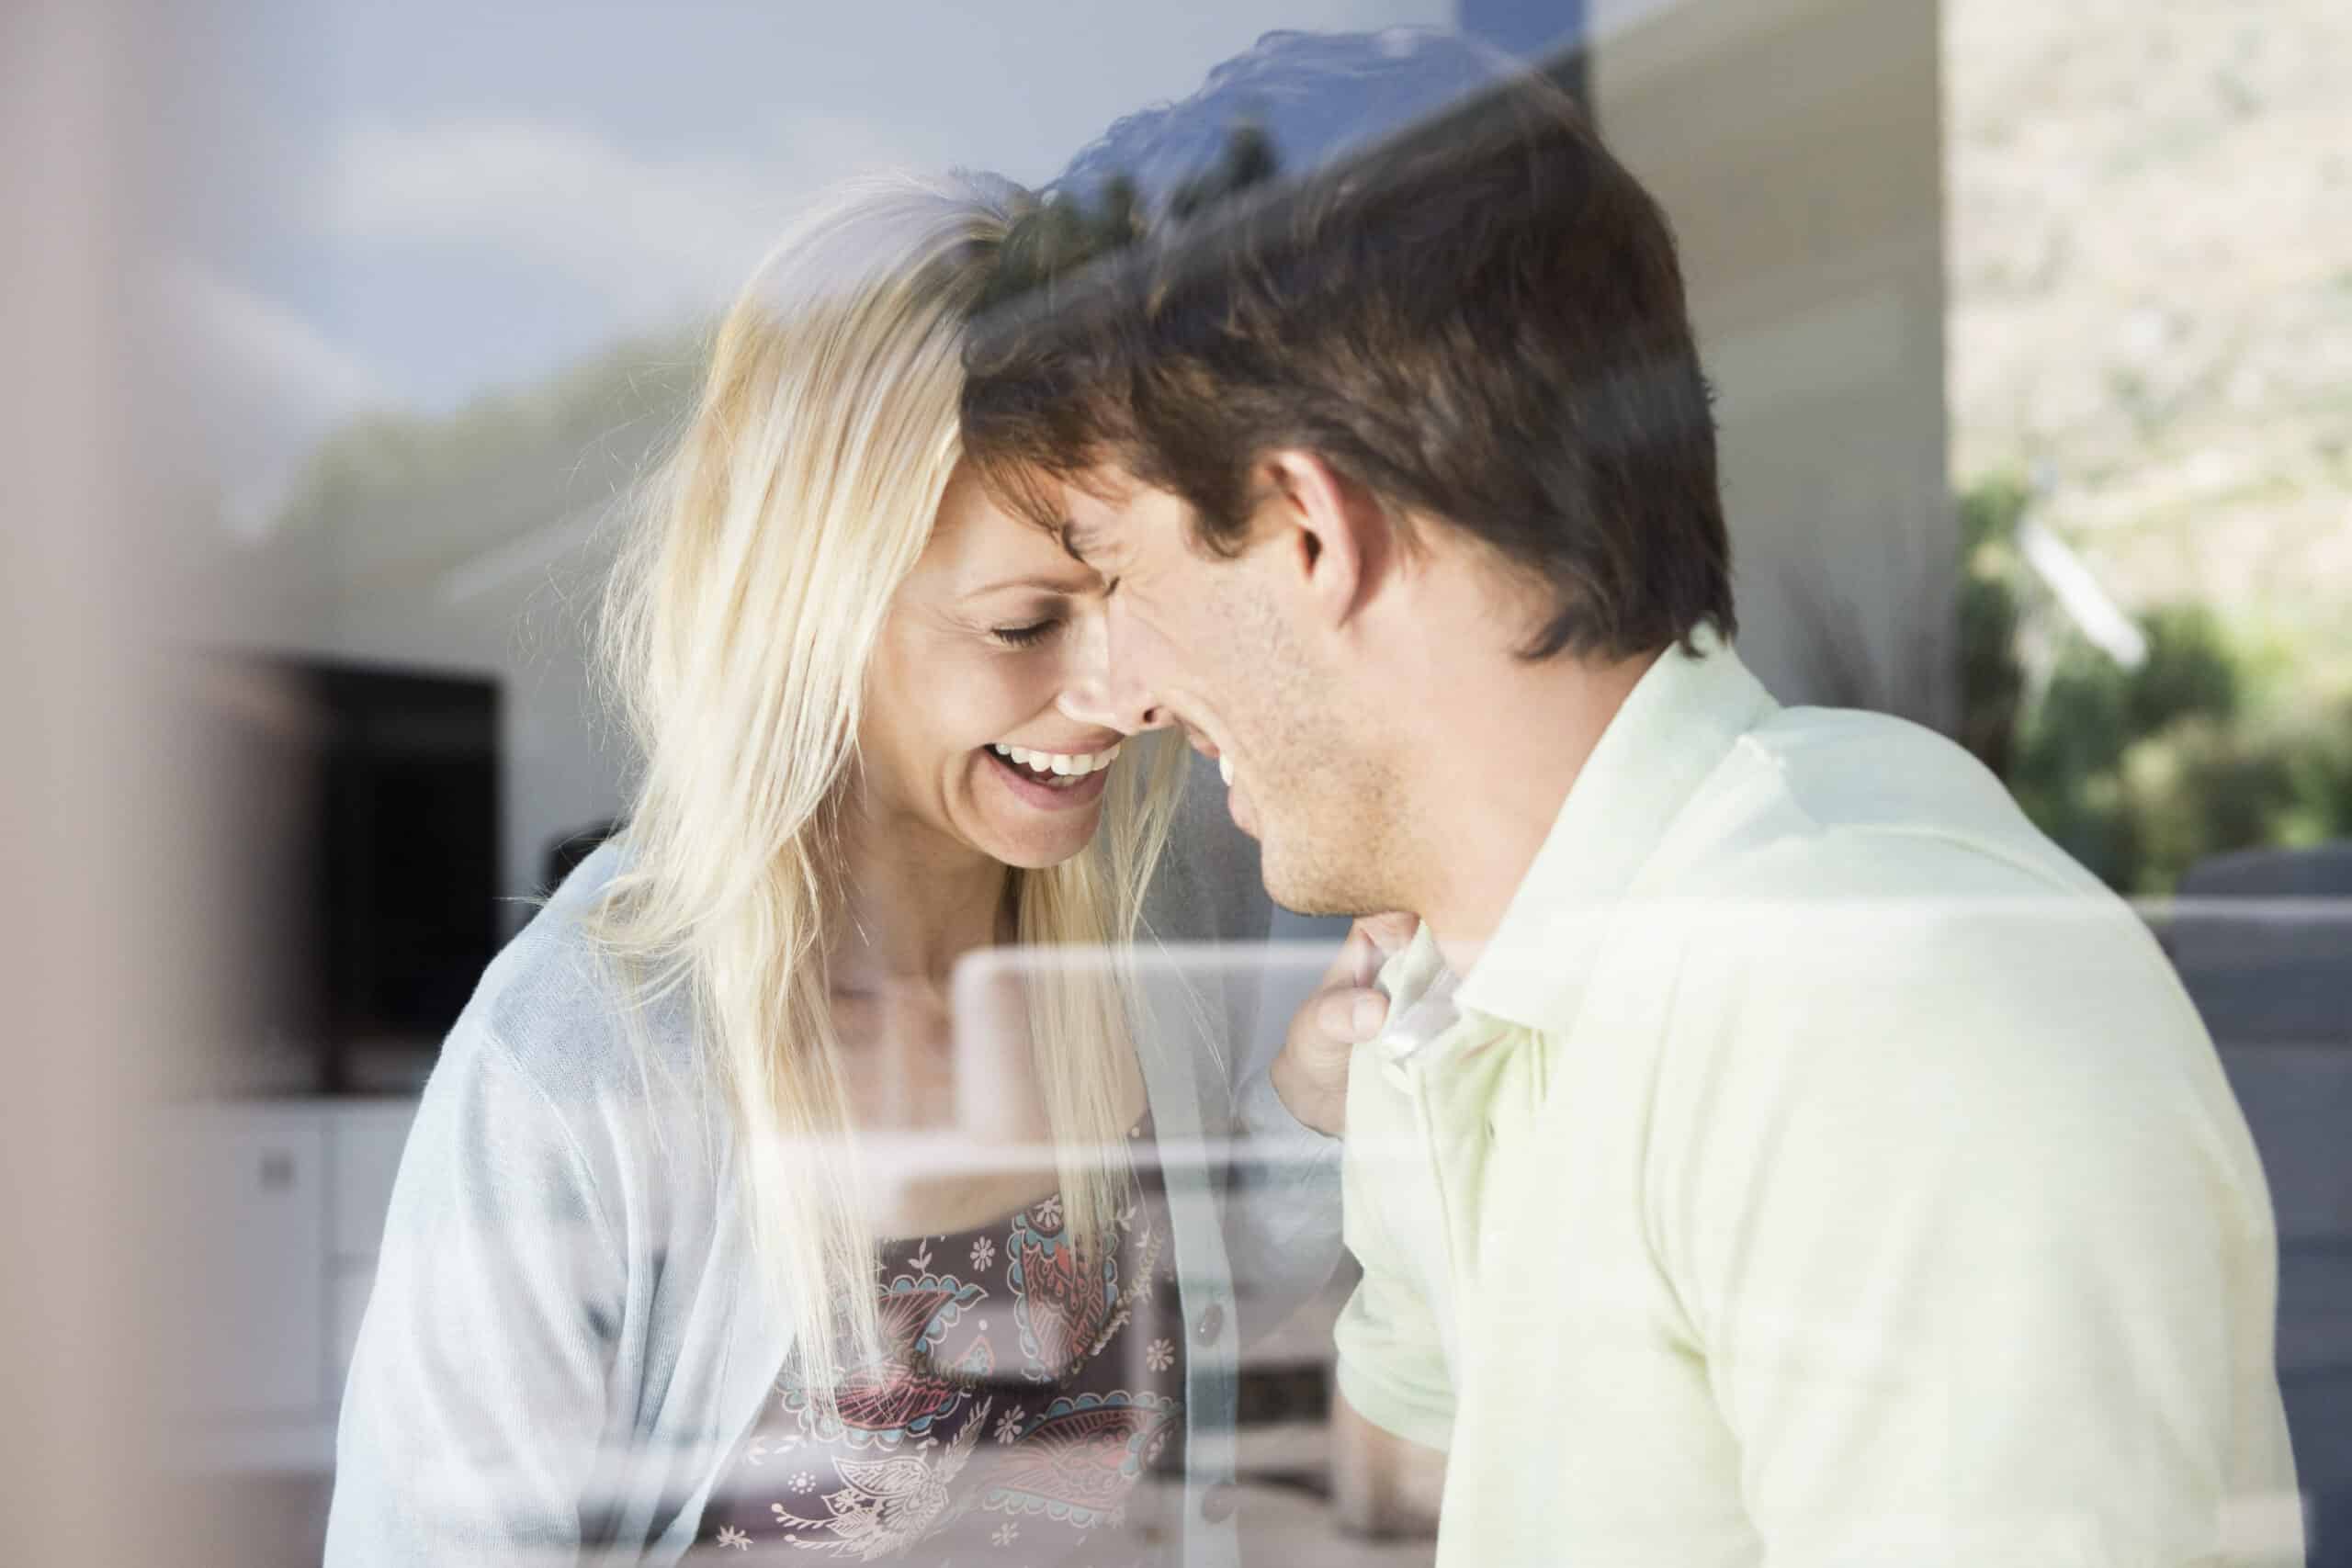 Ein fröhliches Paar berührt seine Stirn und lächelt sich durch ein Glasfenster vor einer hellen, sonnigen Kulisse an. © Fotografie Tomas Rodriguez